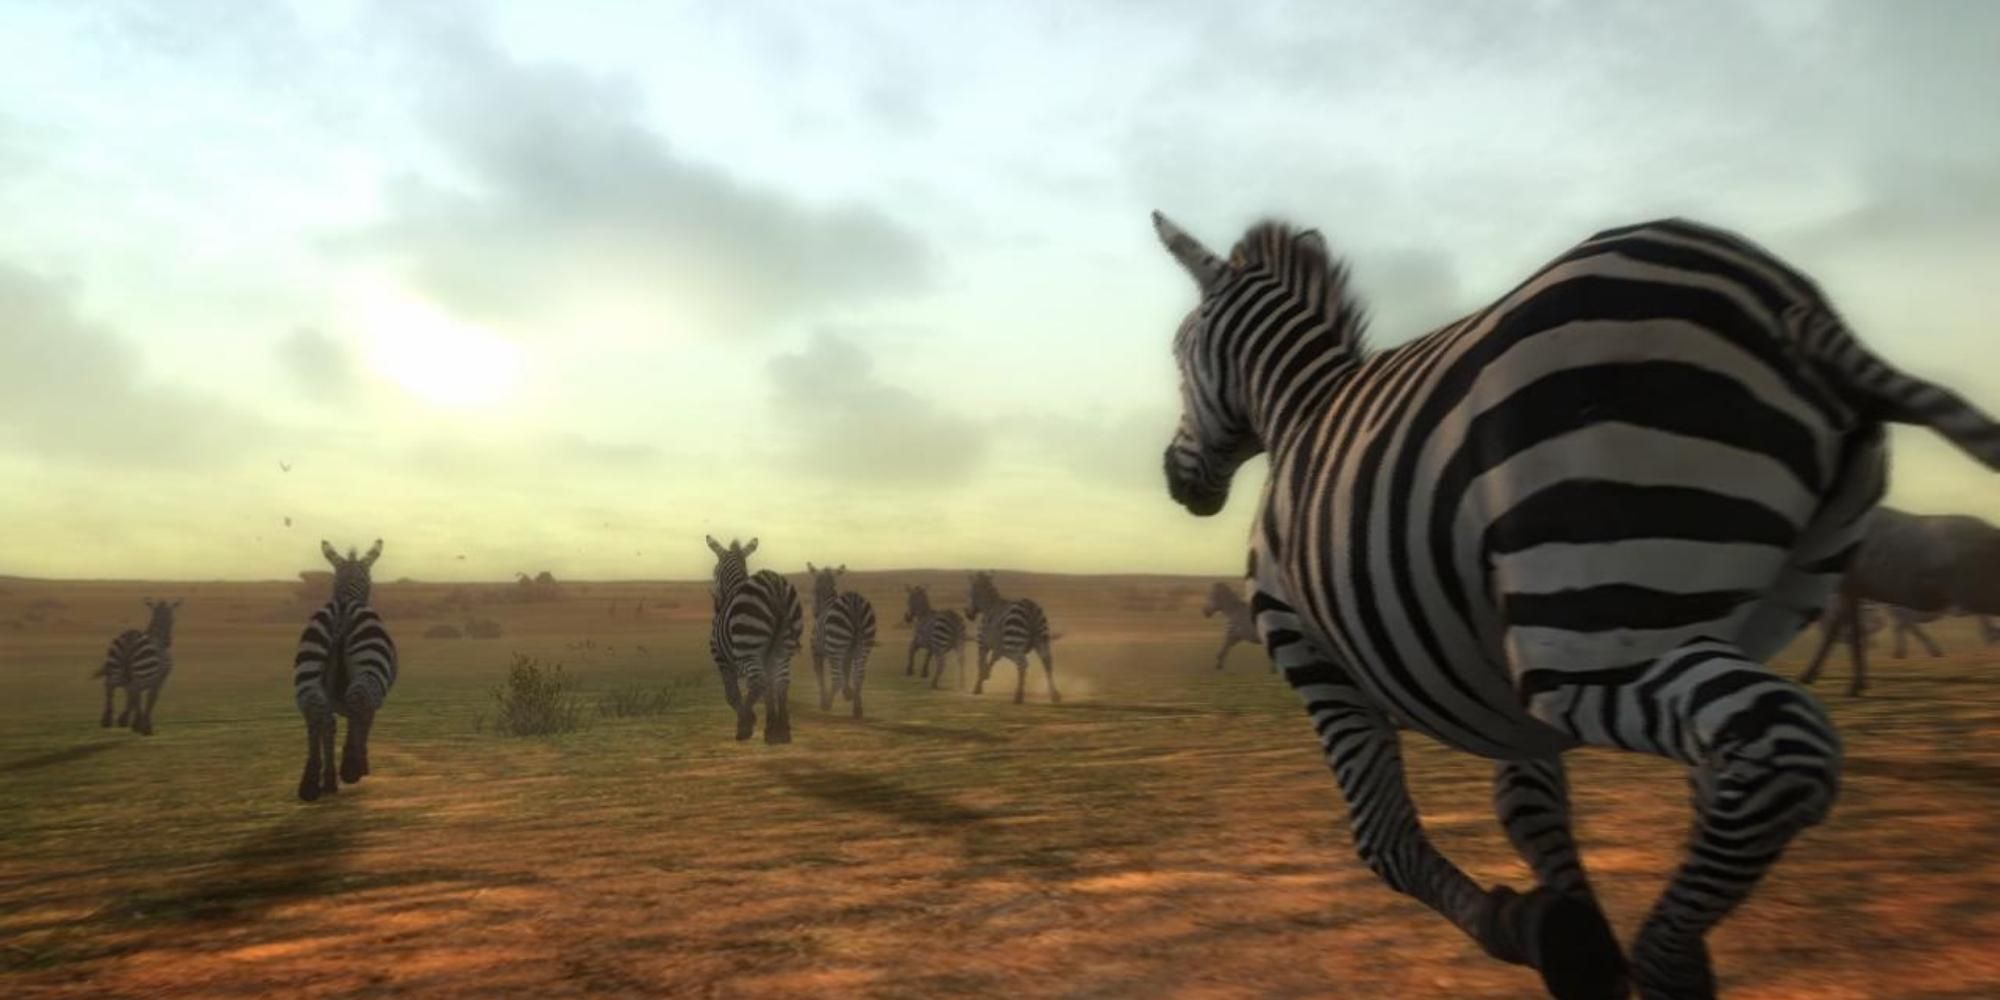 Zebras running in Afrika